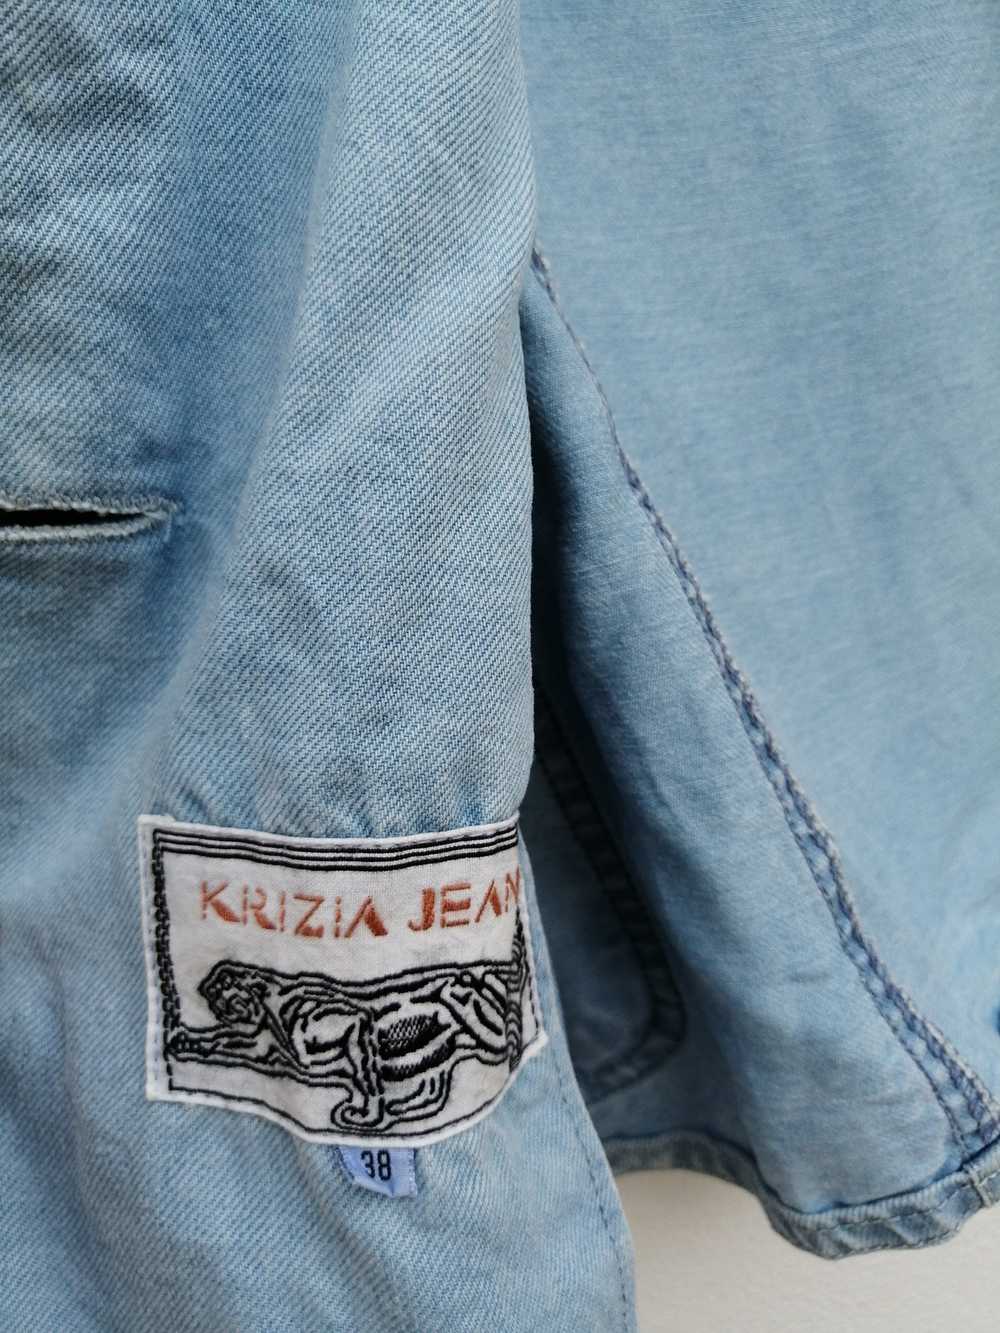 Krizia Uomo Krizia Jacket / Blazer Jeans - image 6